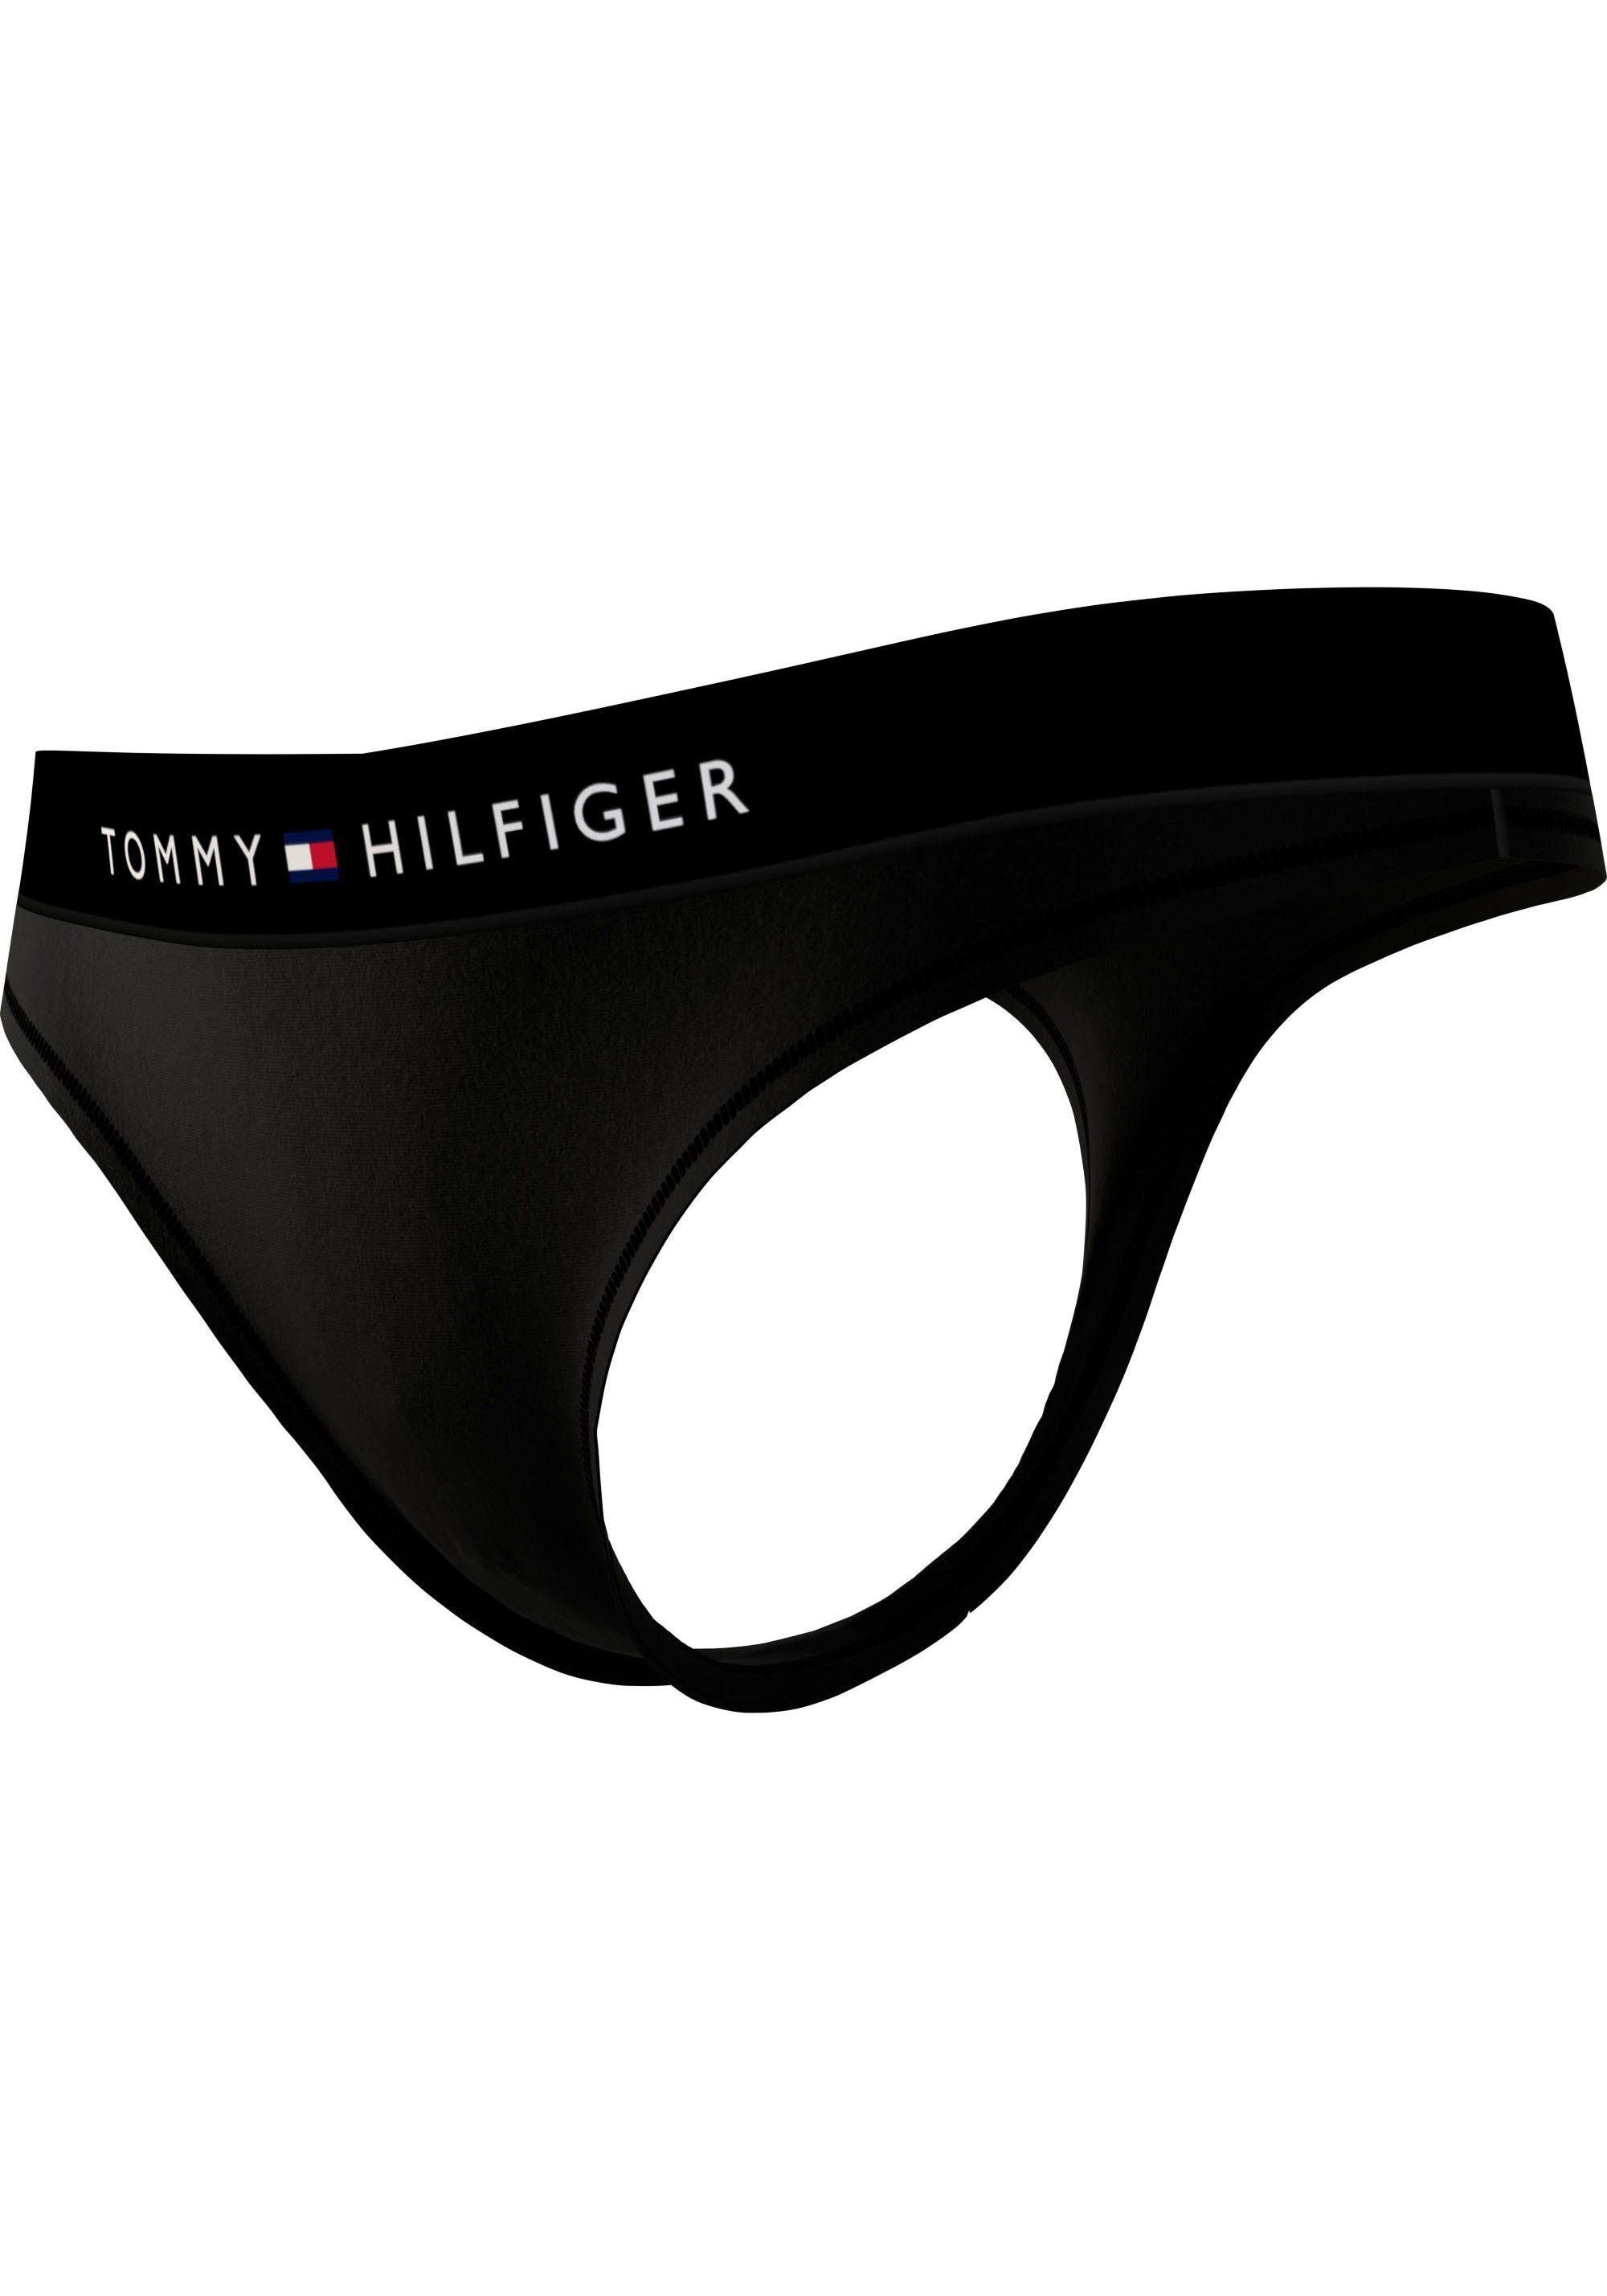 Markenlabel Hilfiger Hilfiger Tommy Tommy mit Slip THONG Black Underwear